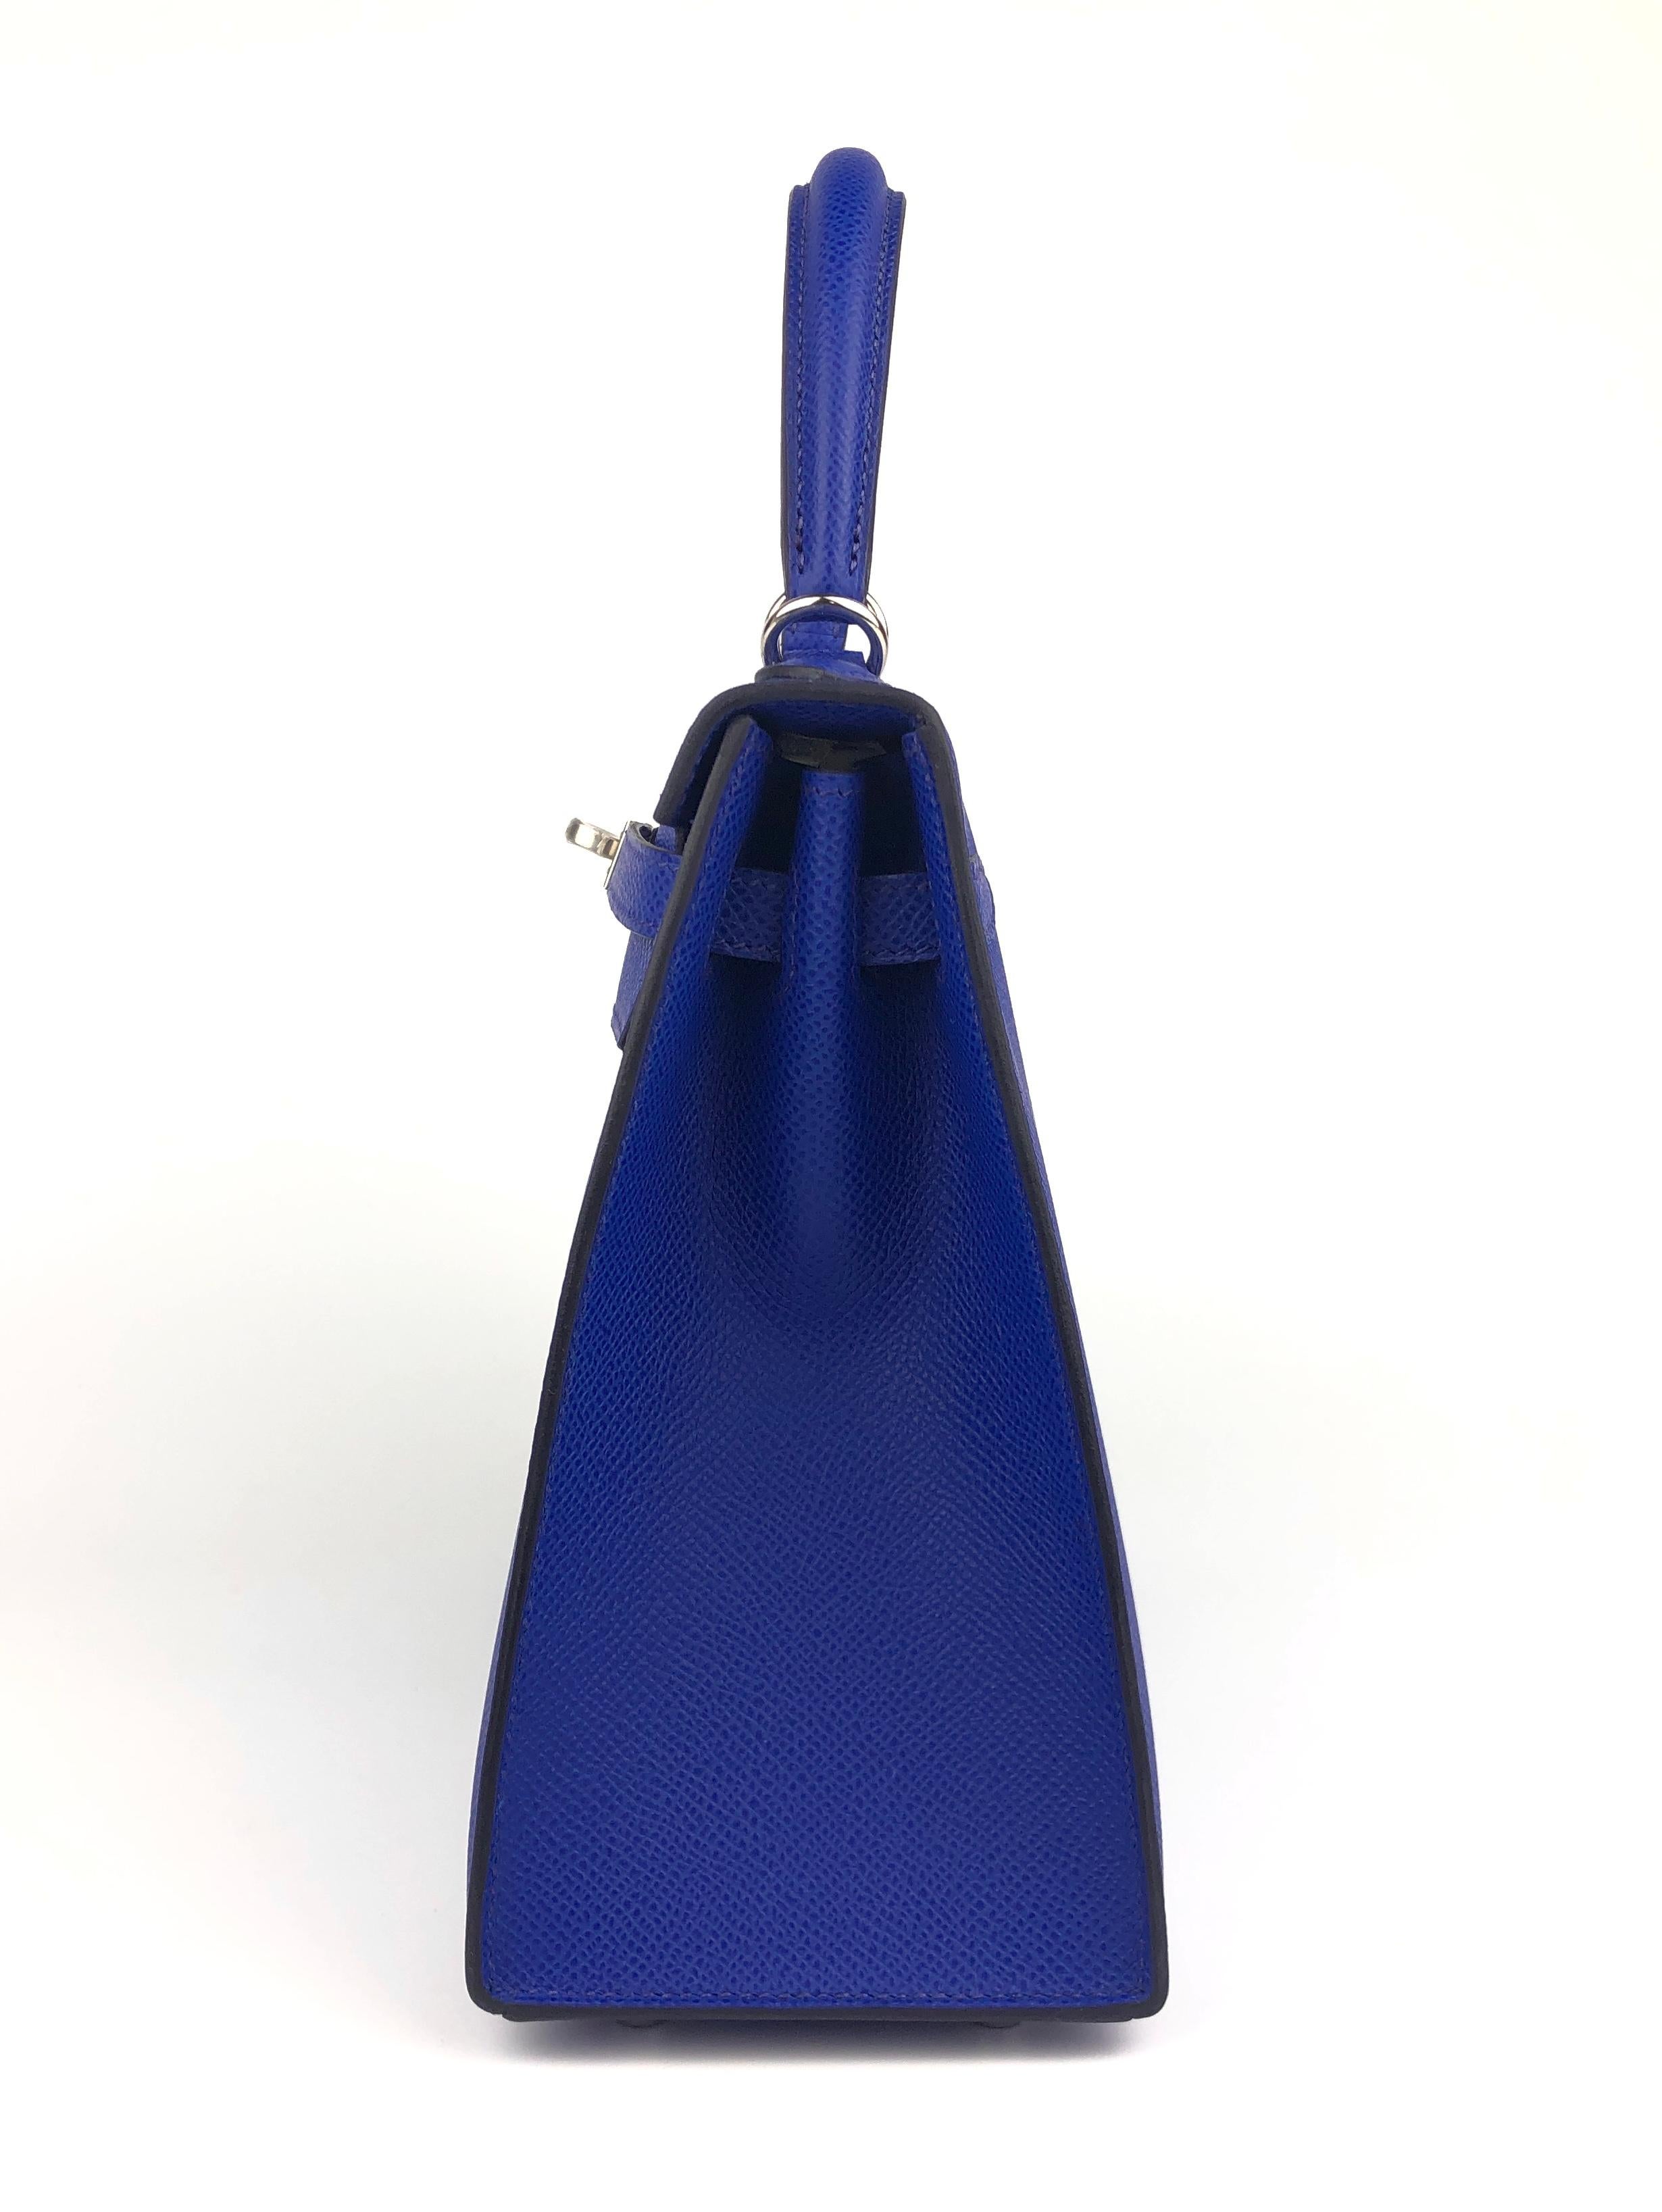 Hermes Kelly 25 Blue Bleu Royal Sellier Shoulder Bag Palladium Hardware 2022 NEW 1